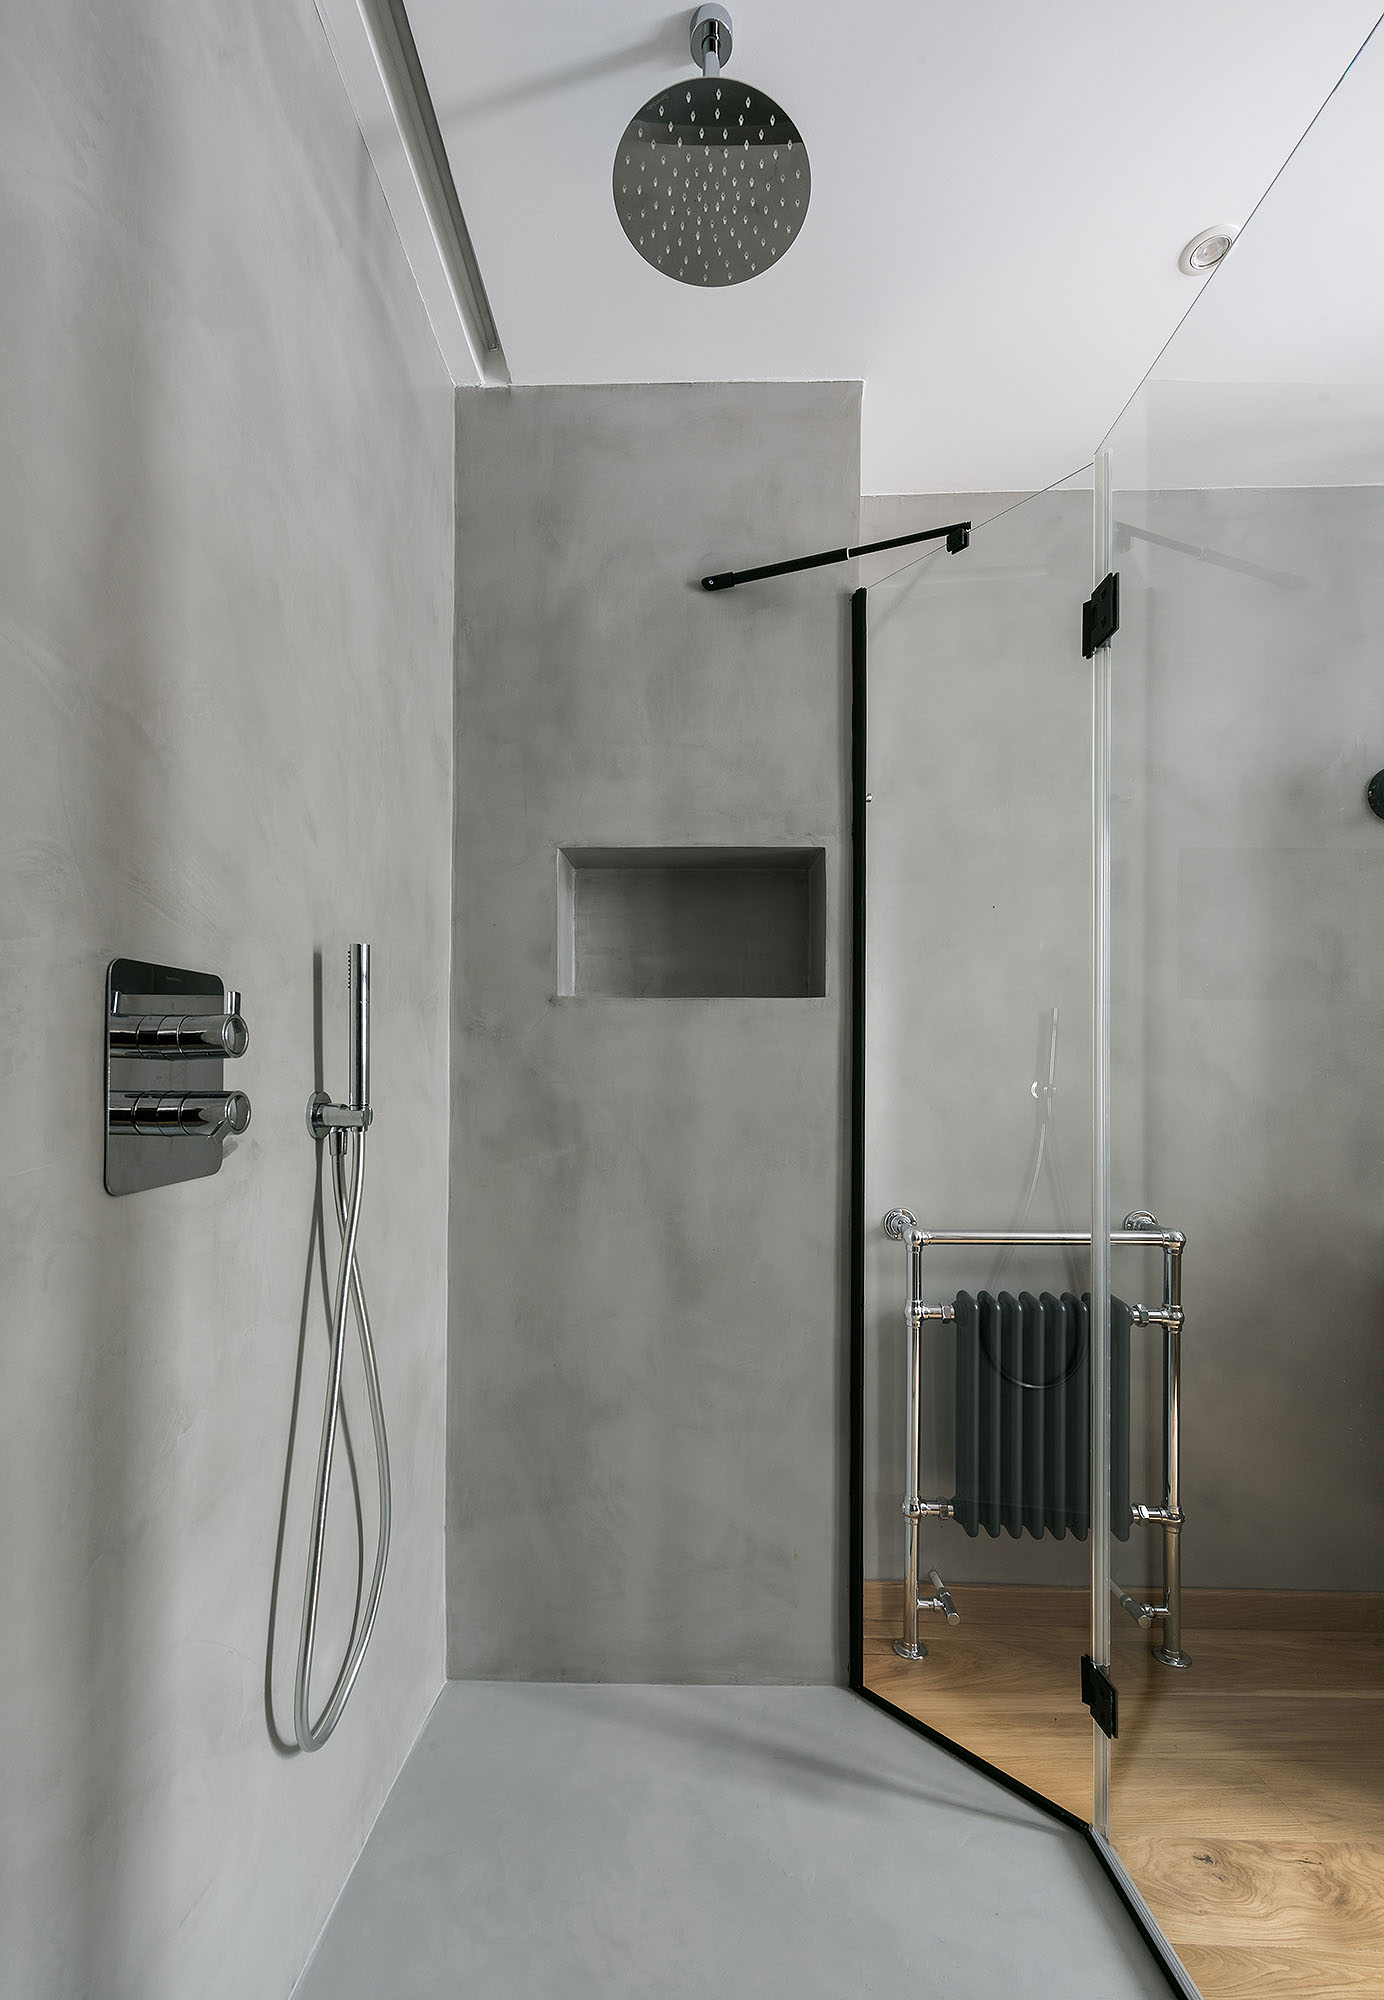 Interiorismo: diseño de baños